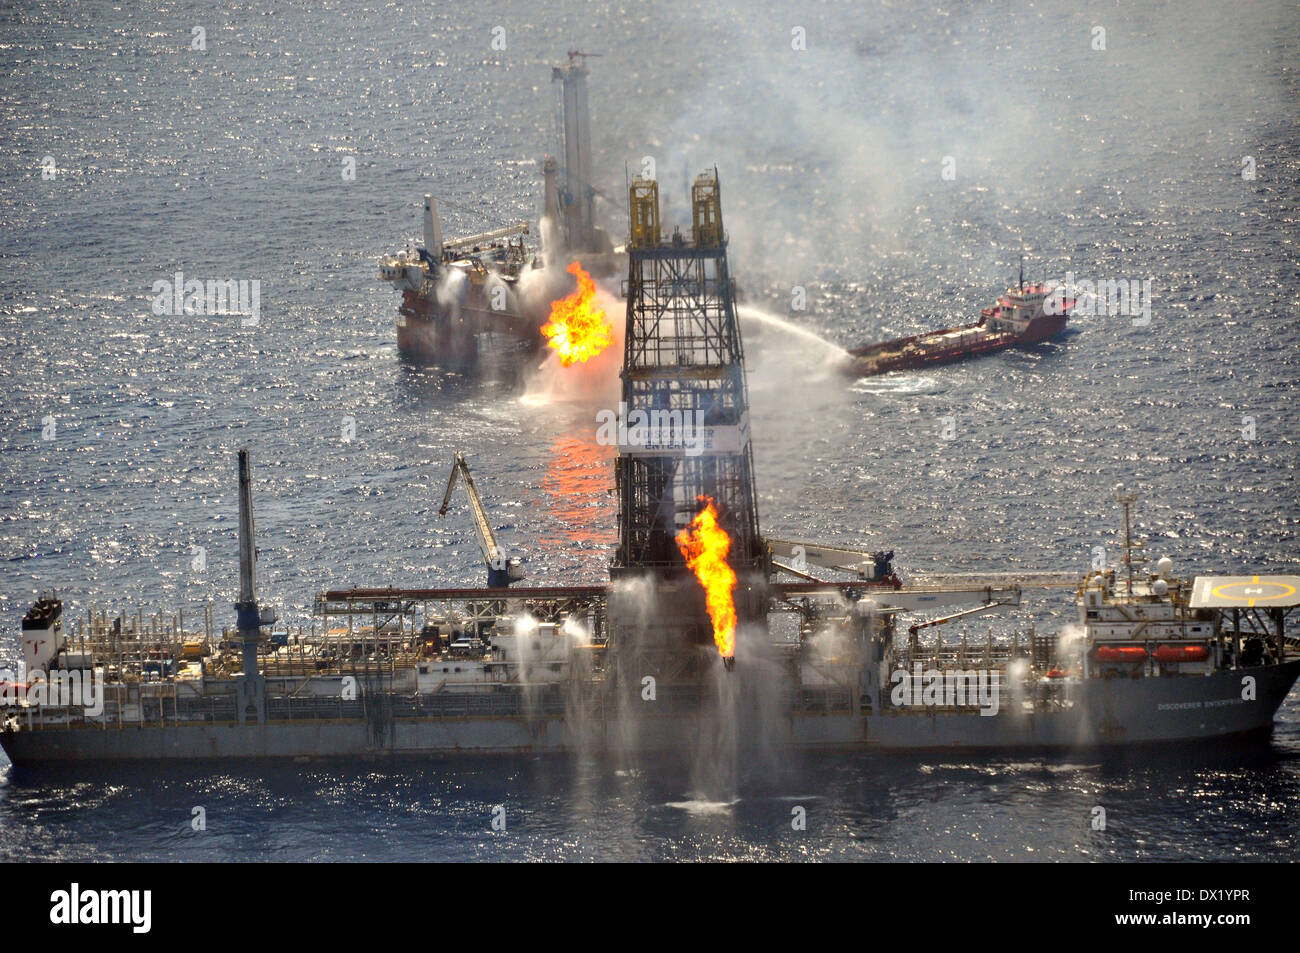 El buque de perforación Discoverer Enterprise y Q4000 quemar el gas desde el destapado Deepwater Horizon como la limpieza del pozo continúa en la mayor catástrofe petrolera de la historia, el 26 de junio de 2010 en el Golfo de México. Foto de stock